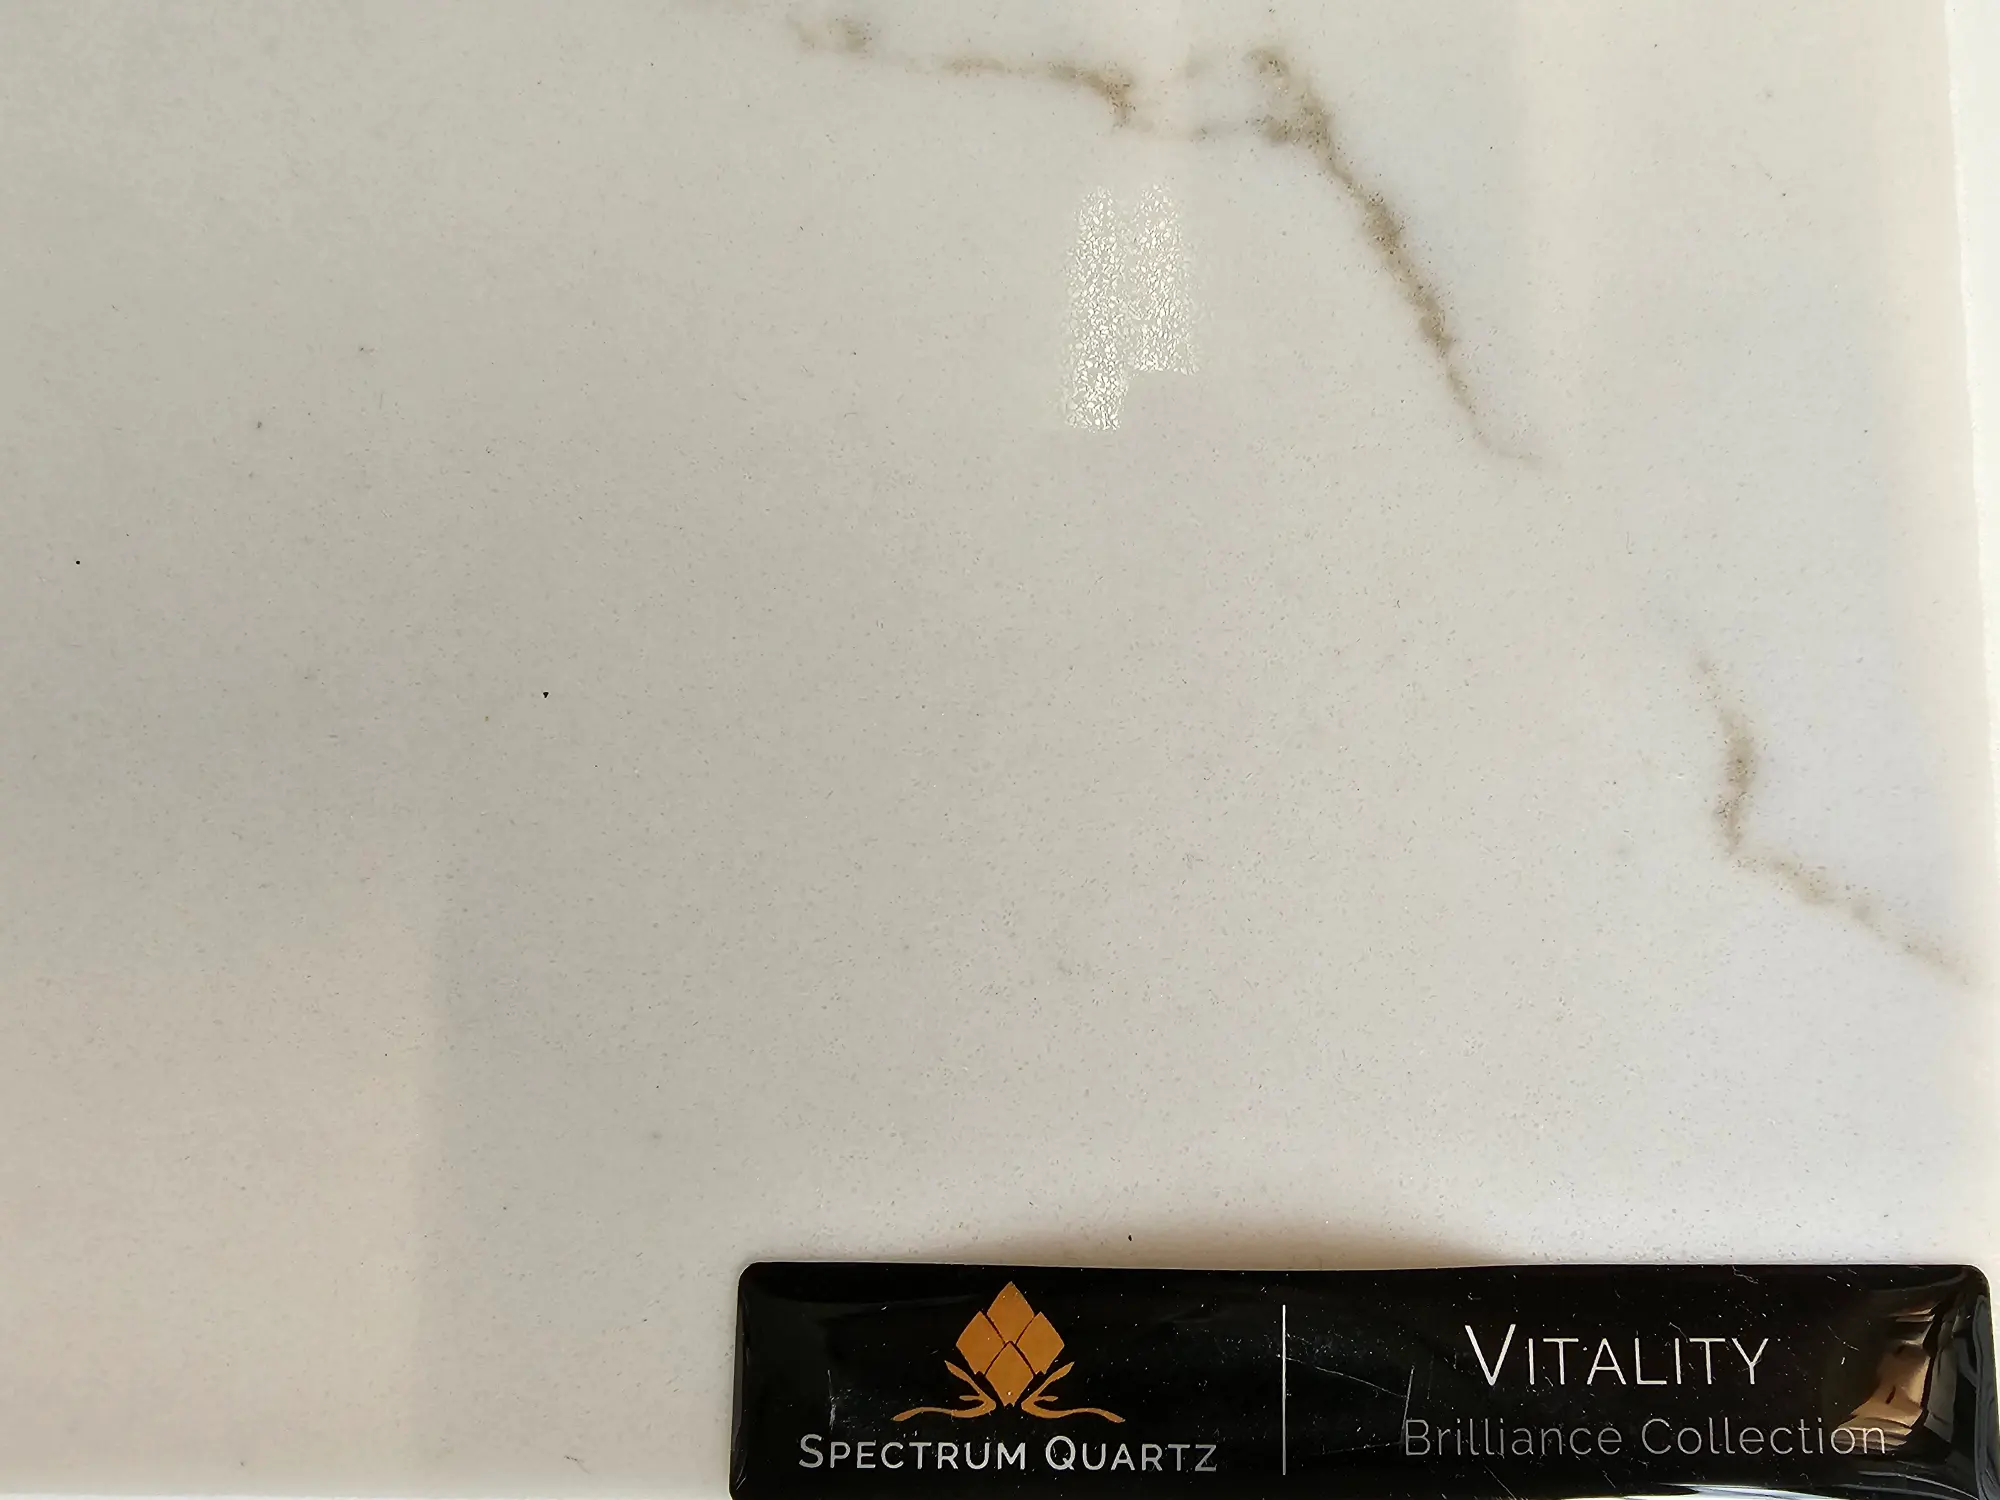 Vitality spectrum quartz countertop